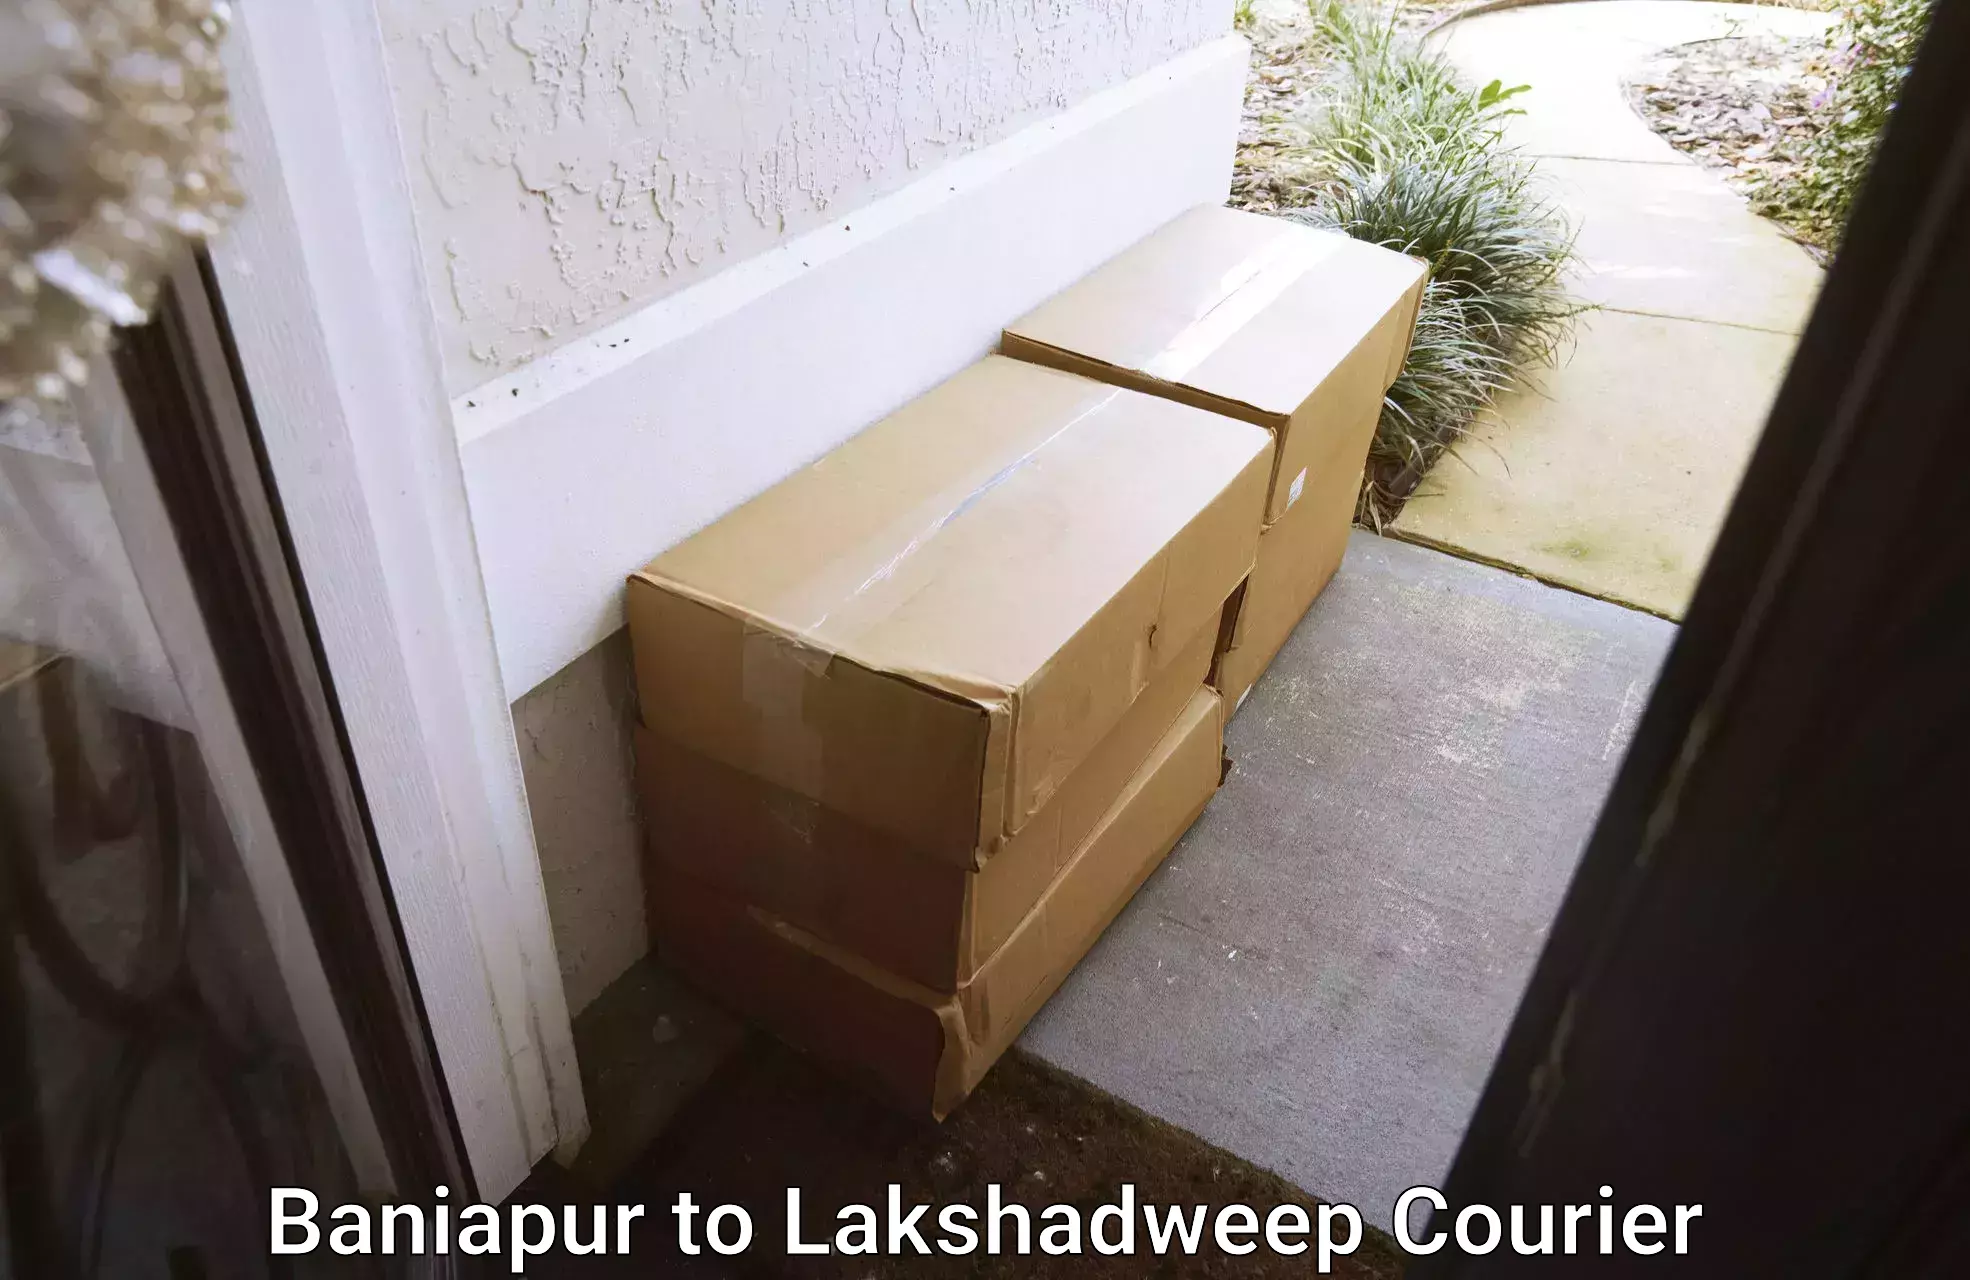 Reliable furniture transport Baniapur to Lakshadweep